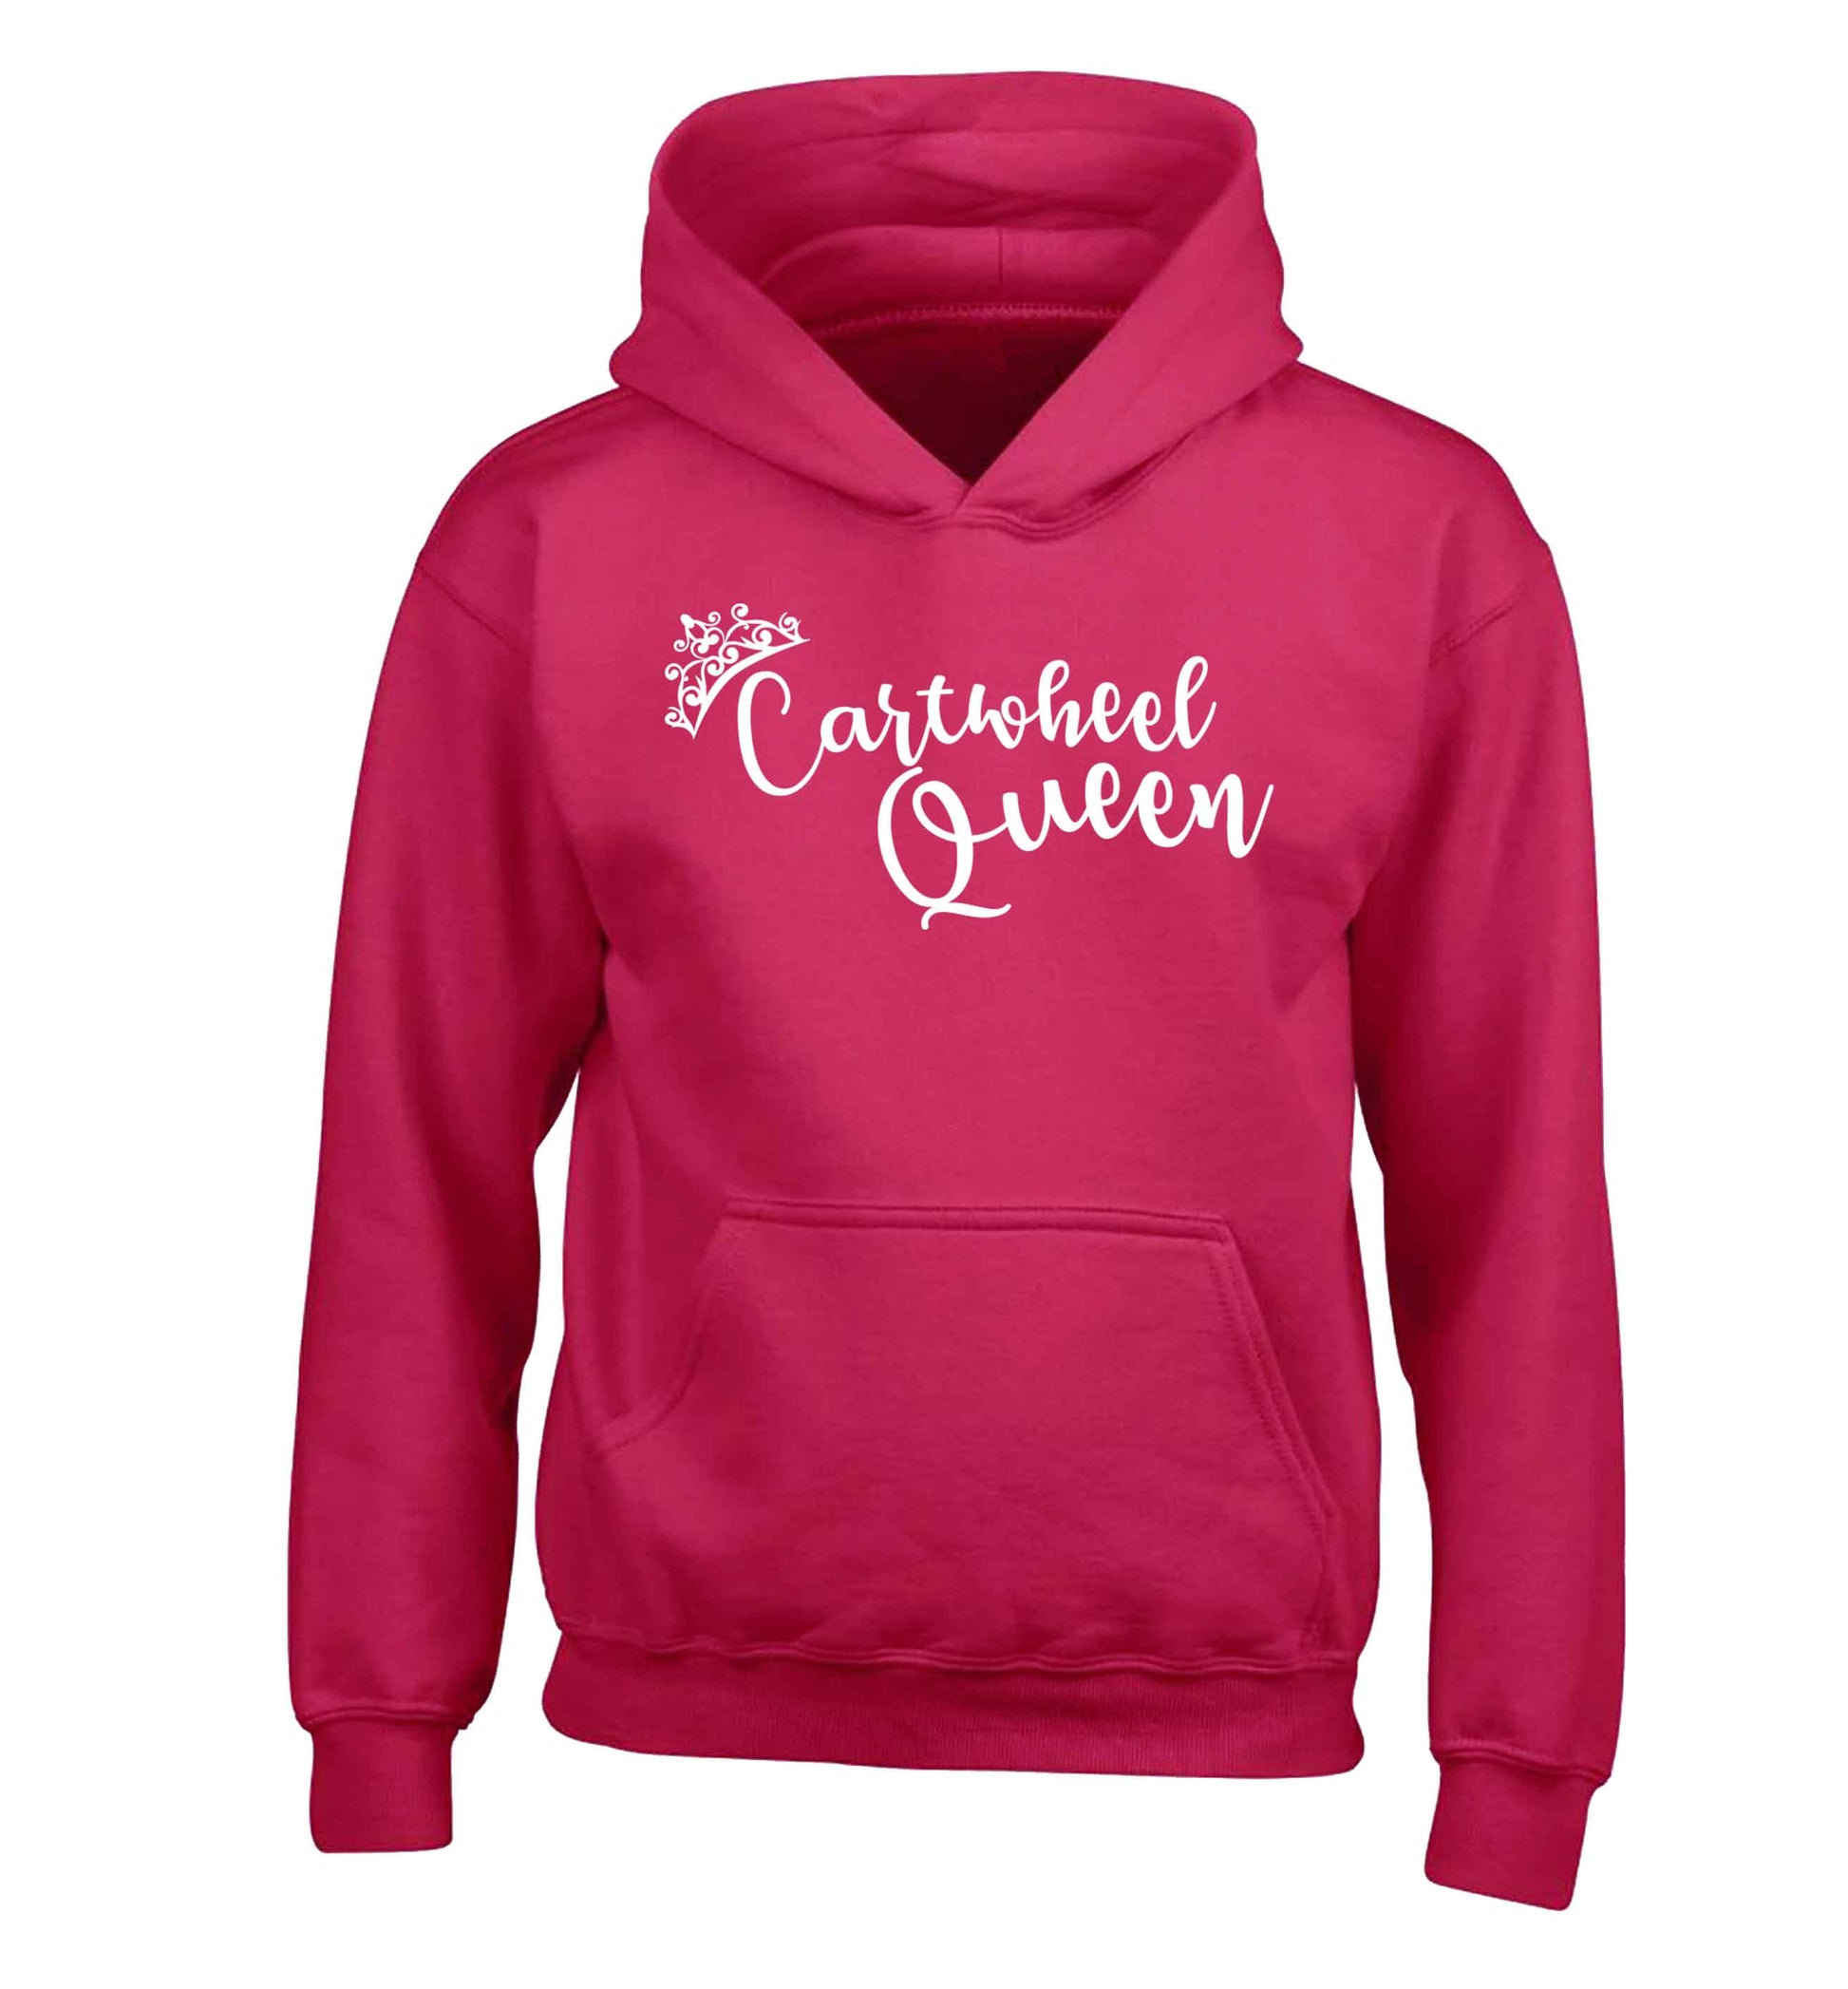 Cartwheel queen children's pink hoodie 12-13 Years